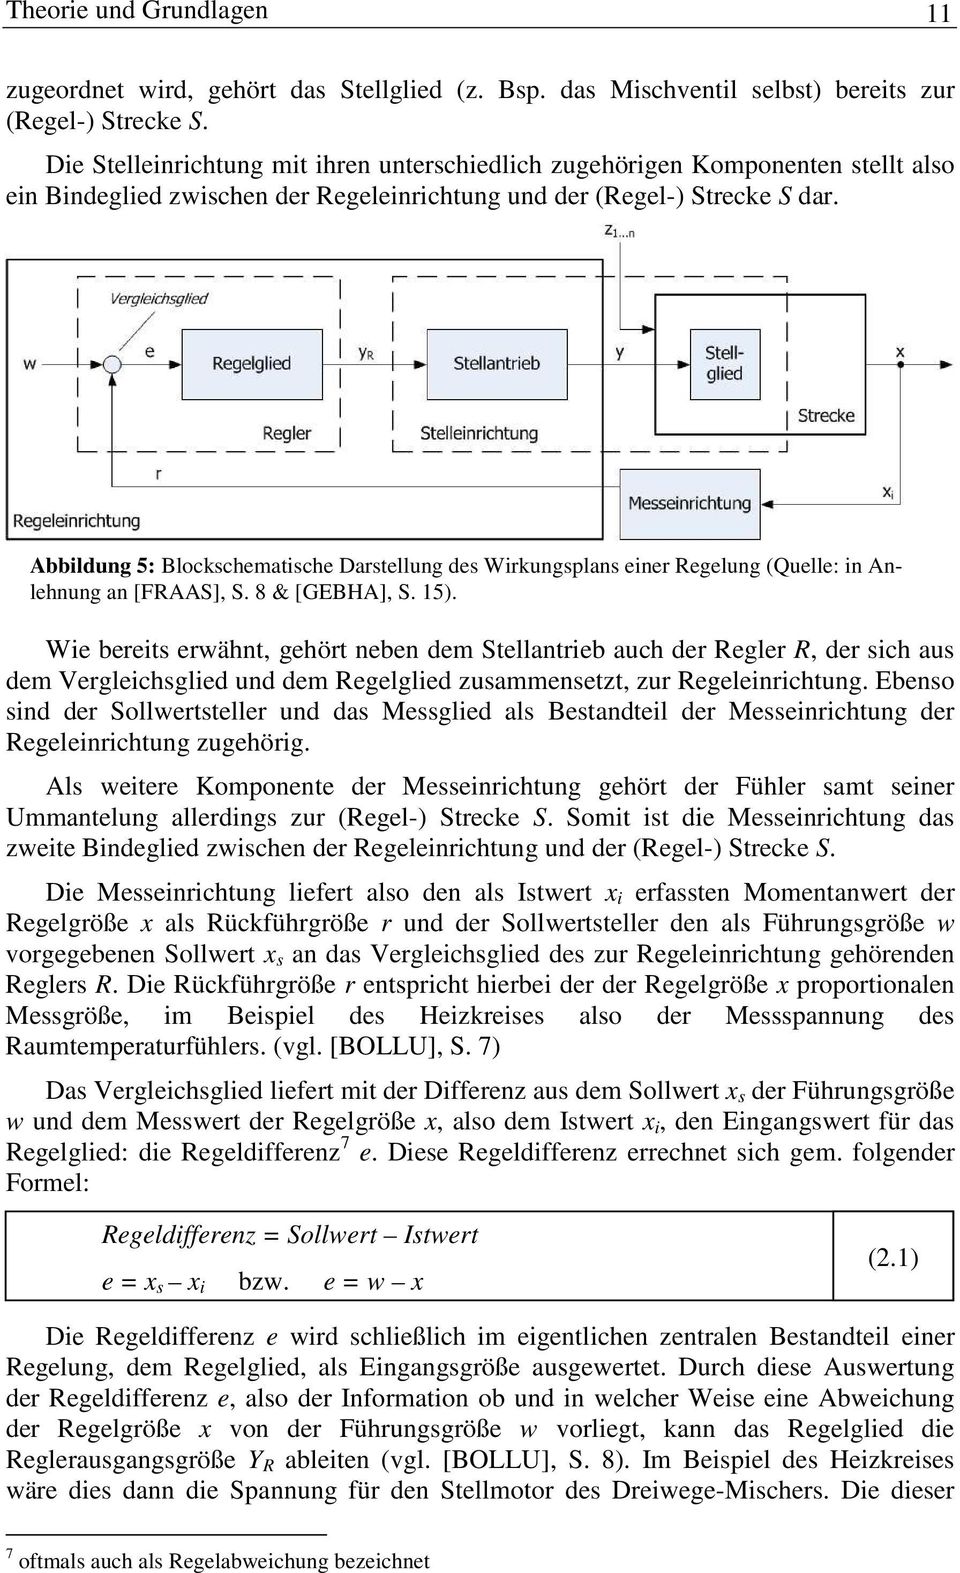 Abbildung 5: Blockschematische Darstellung des Wirkungsplans einer Regelung (Quelle: in Anlehnung an [FRAAS], S. 8 & [GEBHA], S. 15).